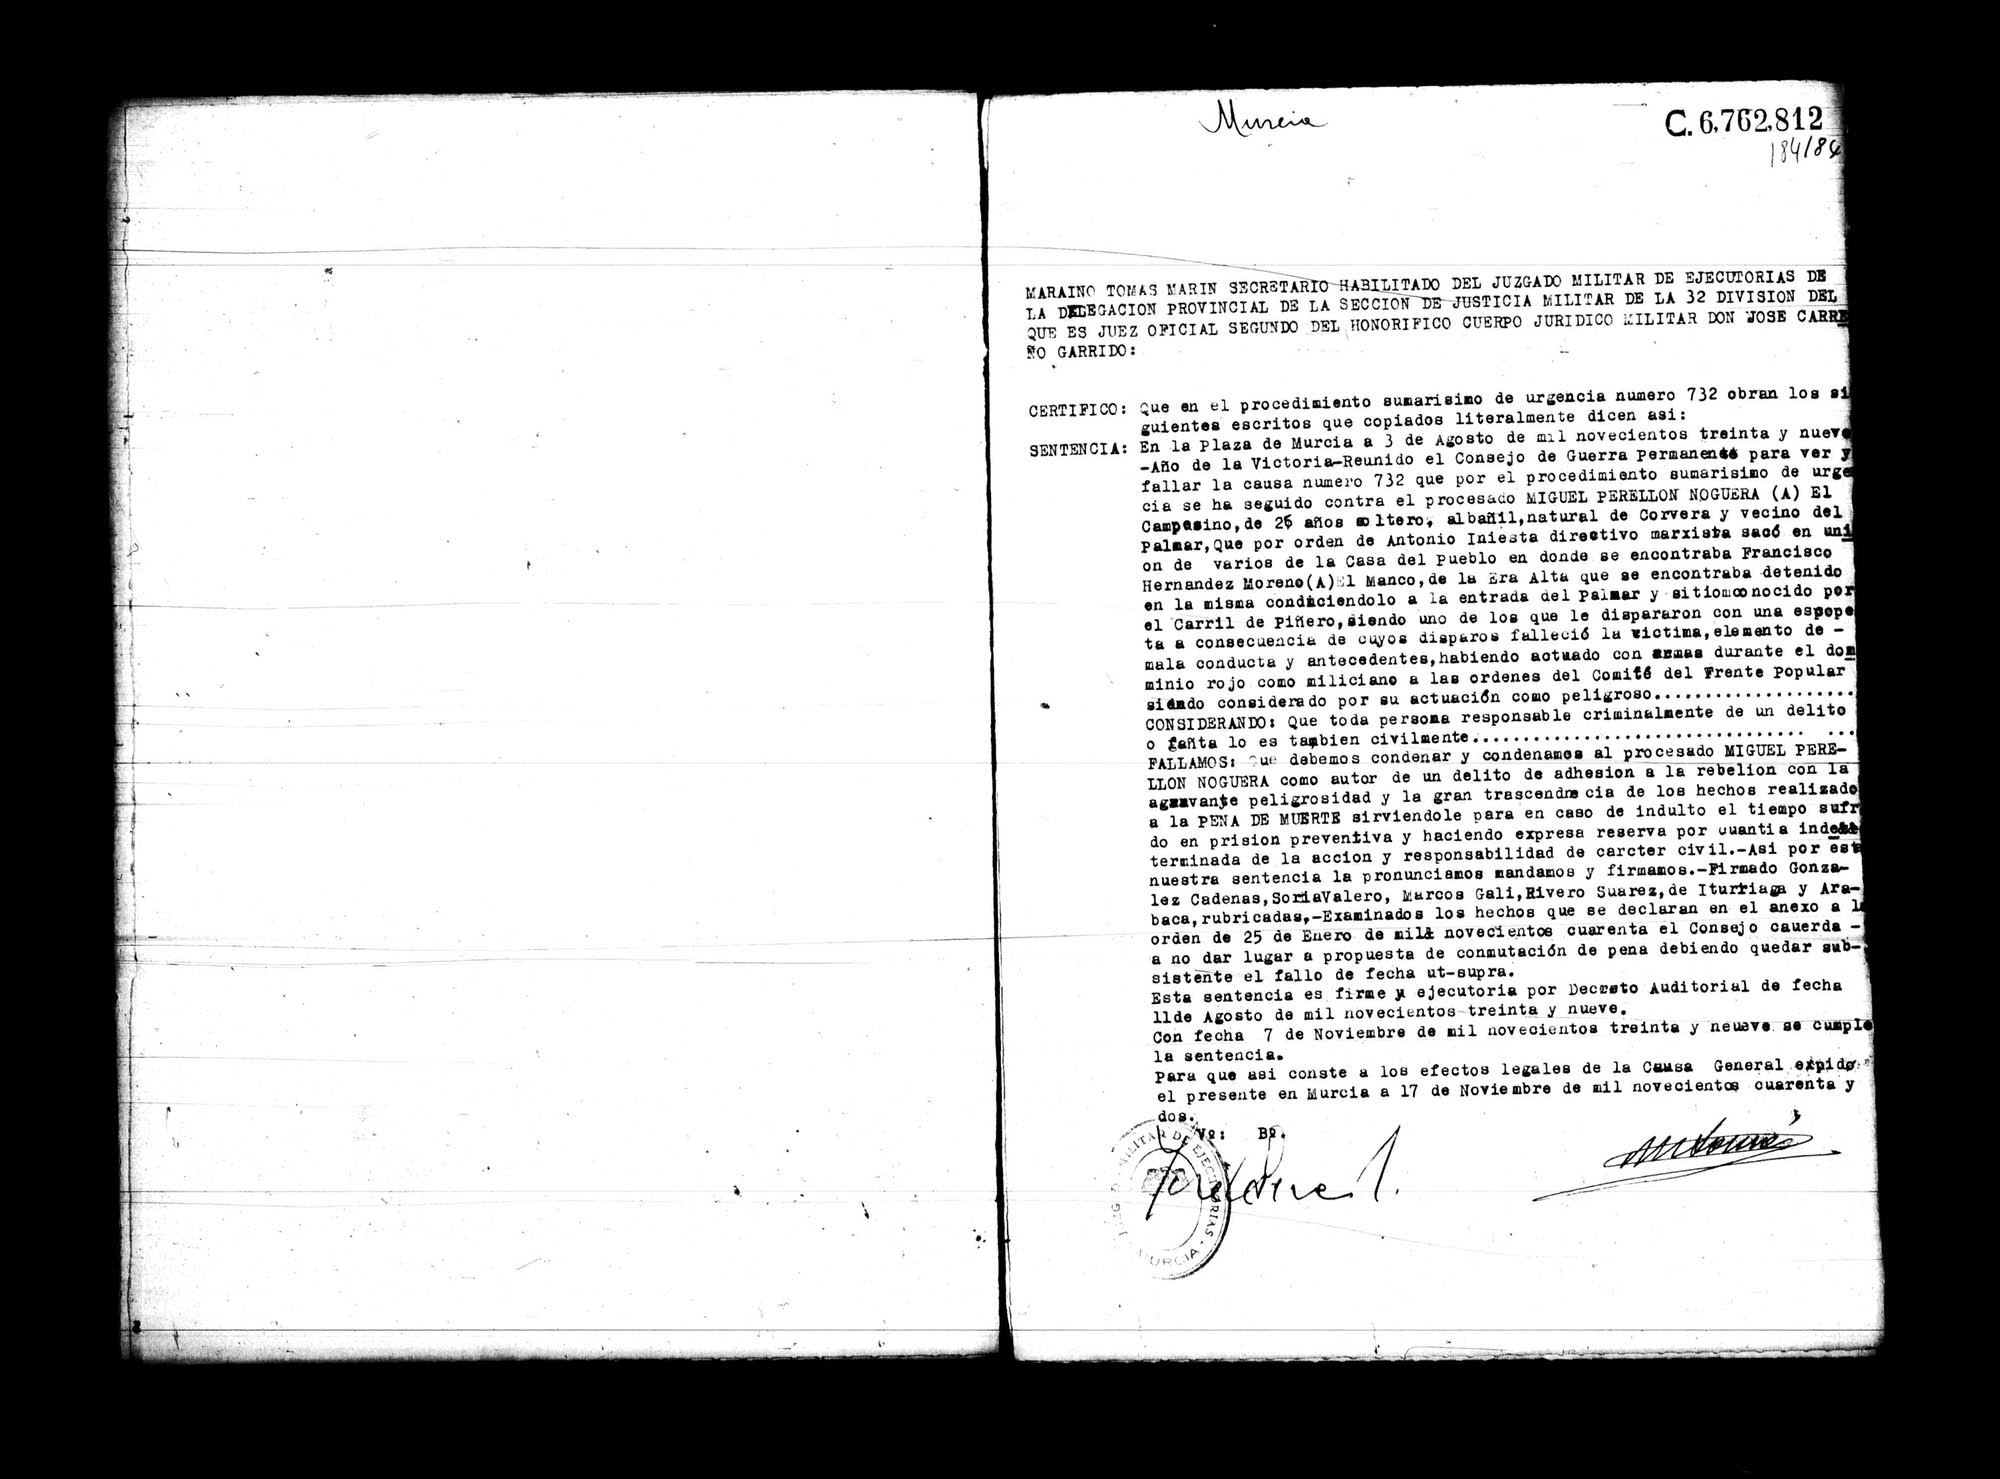 Certificado de la sentencia pronunciada contra Miguel Perellón Noguera, causa 732, el 3 de agosto de 1939 en Murcia.